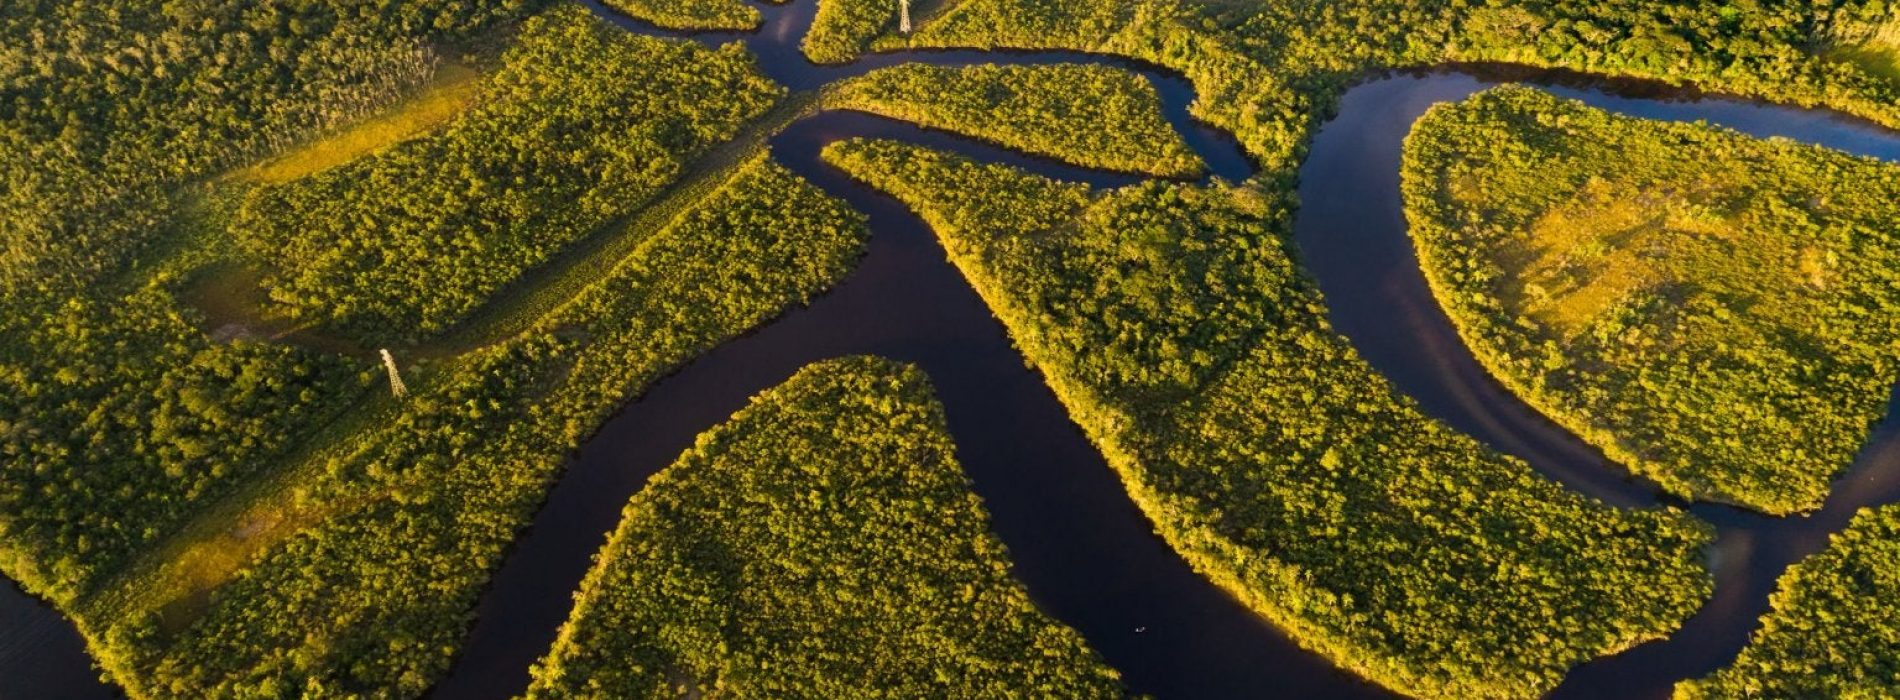 Goed nieuws voor de longen van de aarde nu de inheemse Amazonegroep een illegale boomkapzaak wint